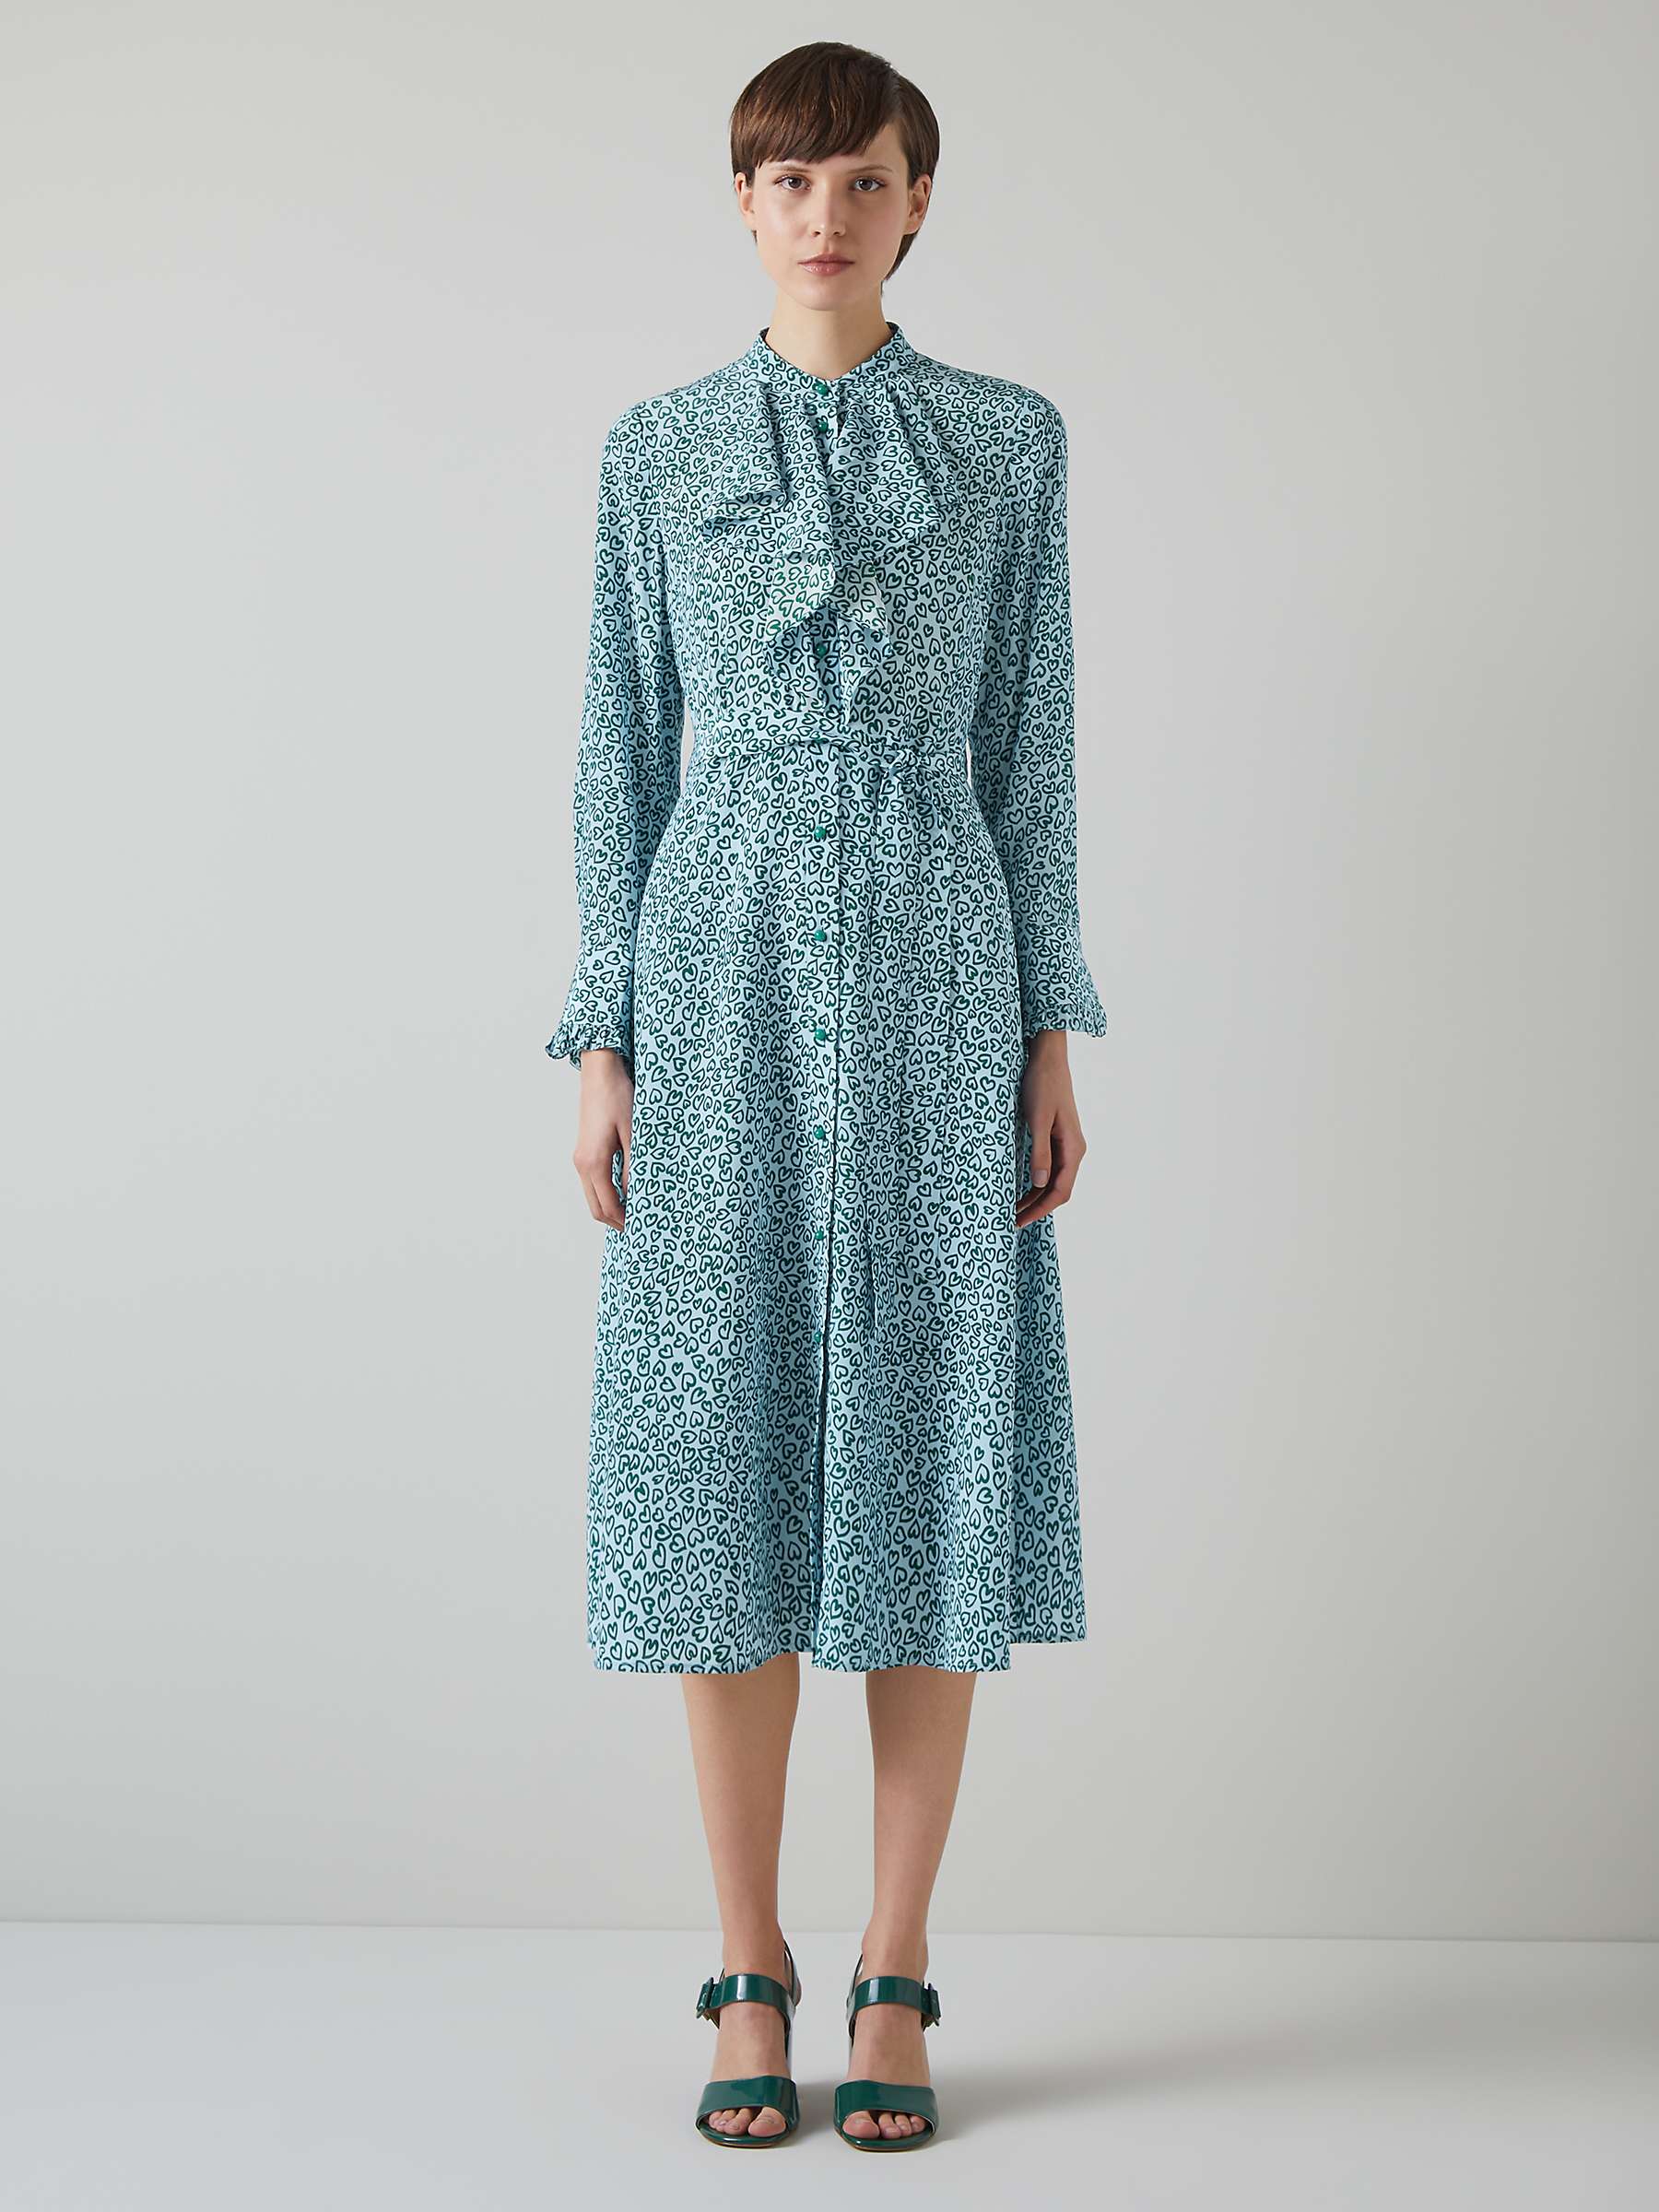 Buy L.K.Bennett Soni Heart Print Silk Dress, Multi Green/Blue Online at johnlewis.com